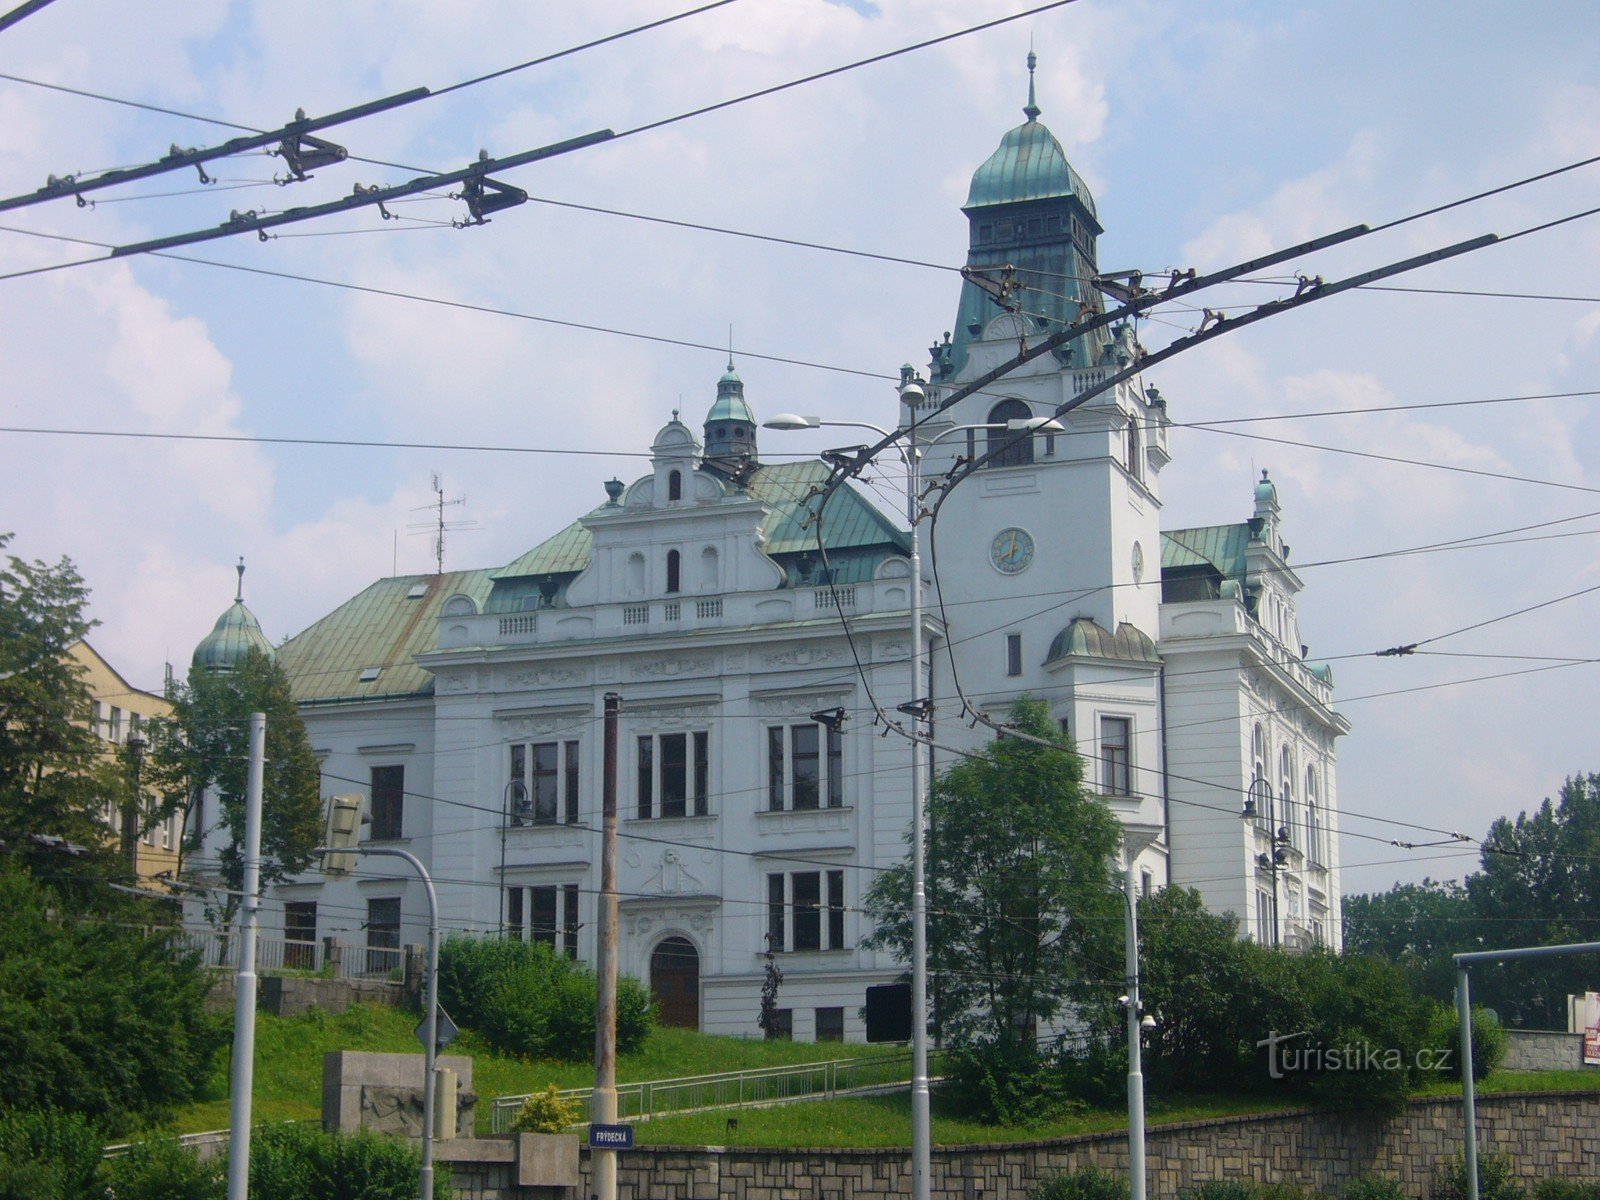 Schlesien Ostrava - Rådhus